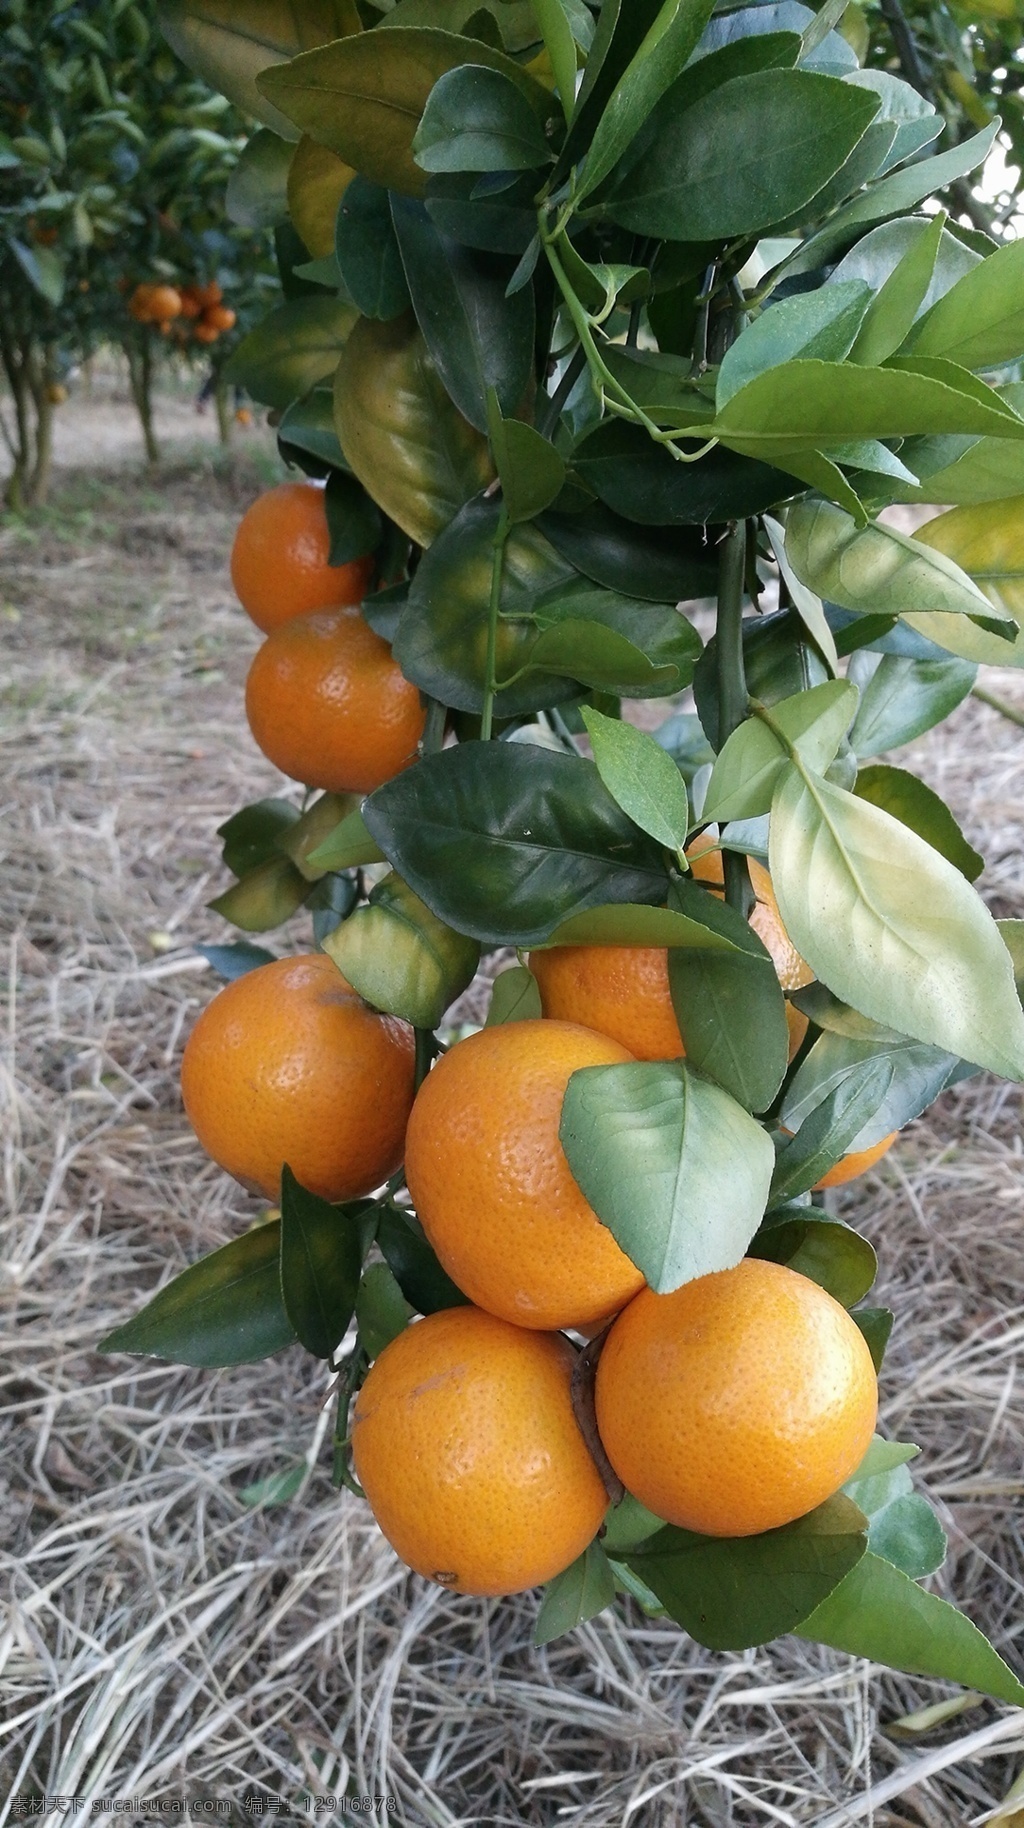 皇帝柑 贡柑 贵妃柑 柑橘 橘子 橙子